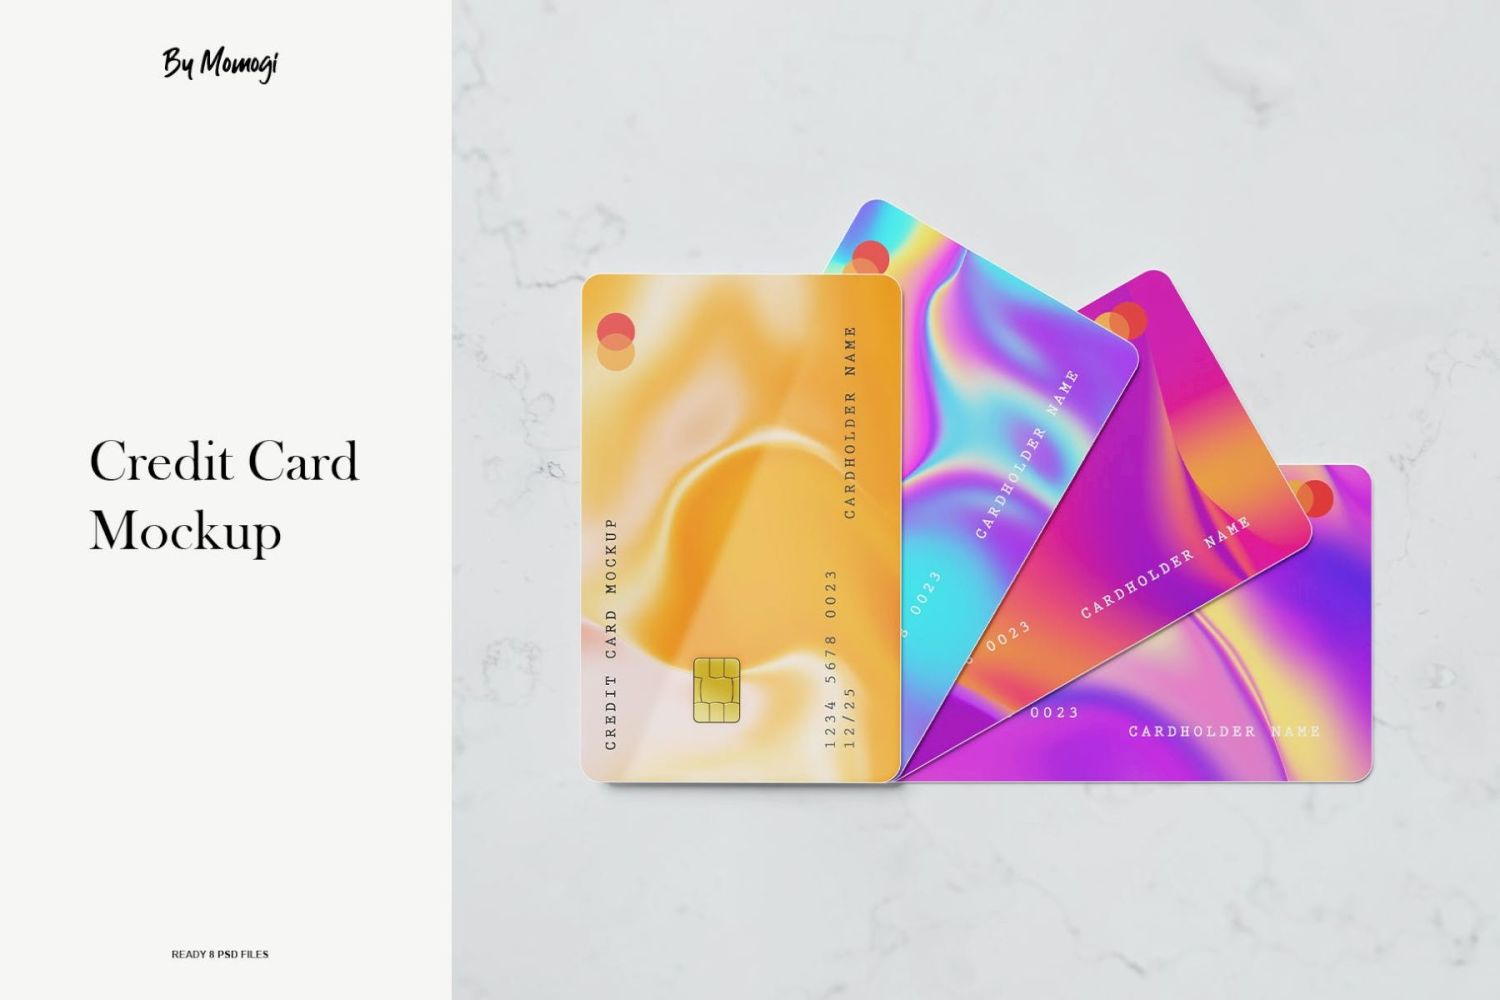 信用卡样机 Credit Card Mockup插图